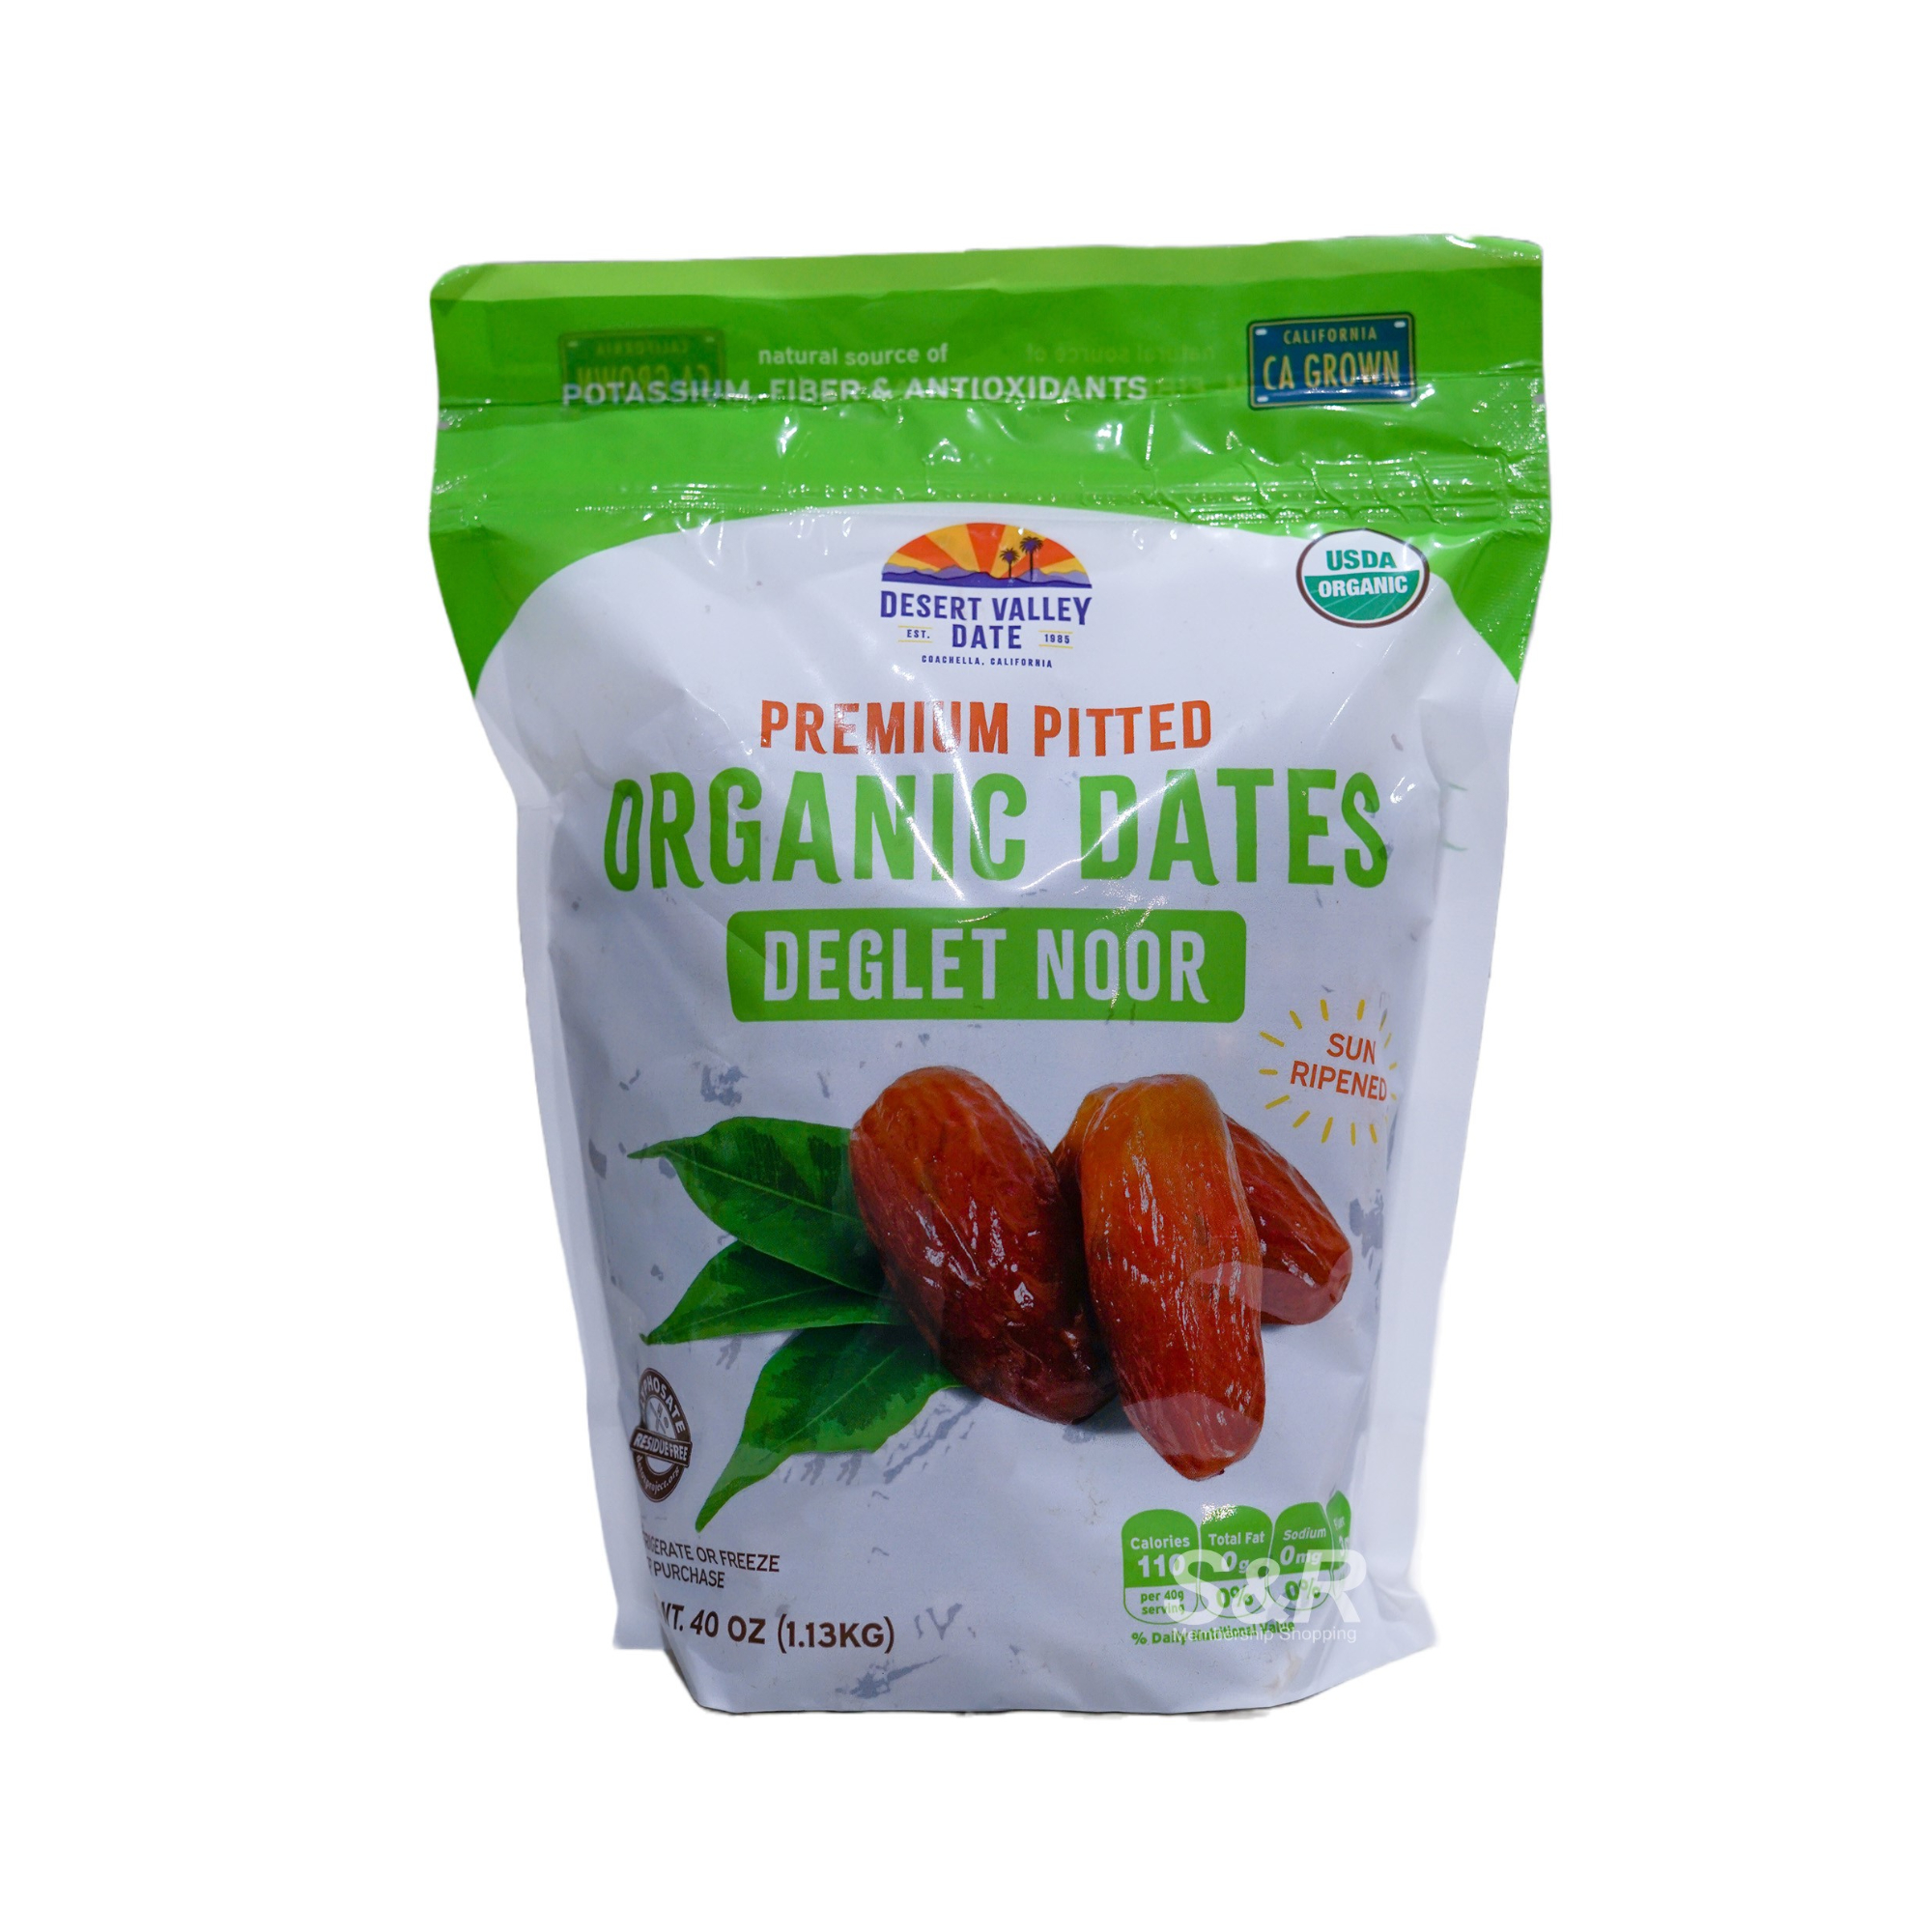 Desert Valley Date Premium Pitted Organic Deglet Noor Dates 1.13kg